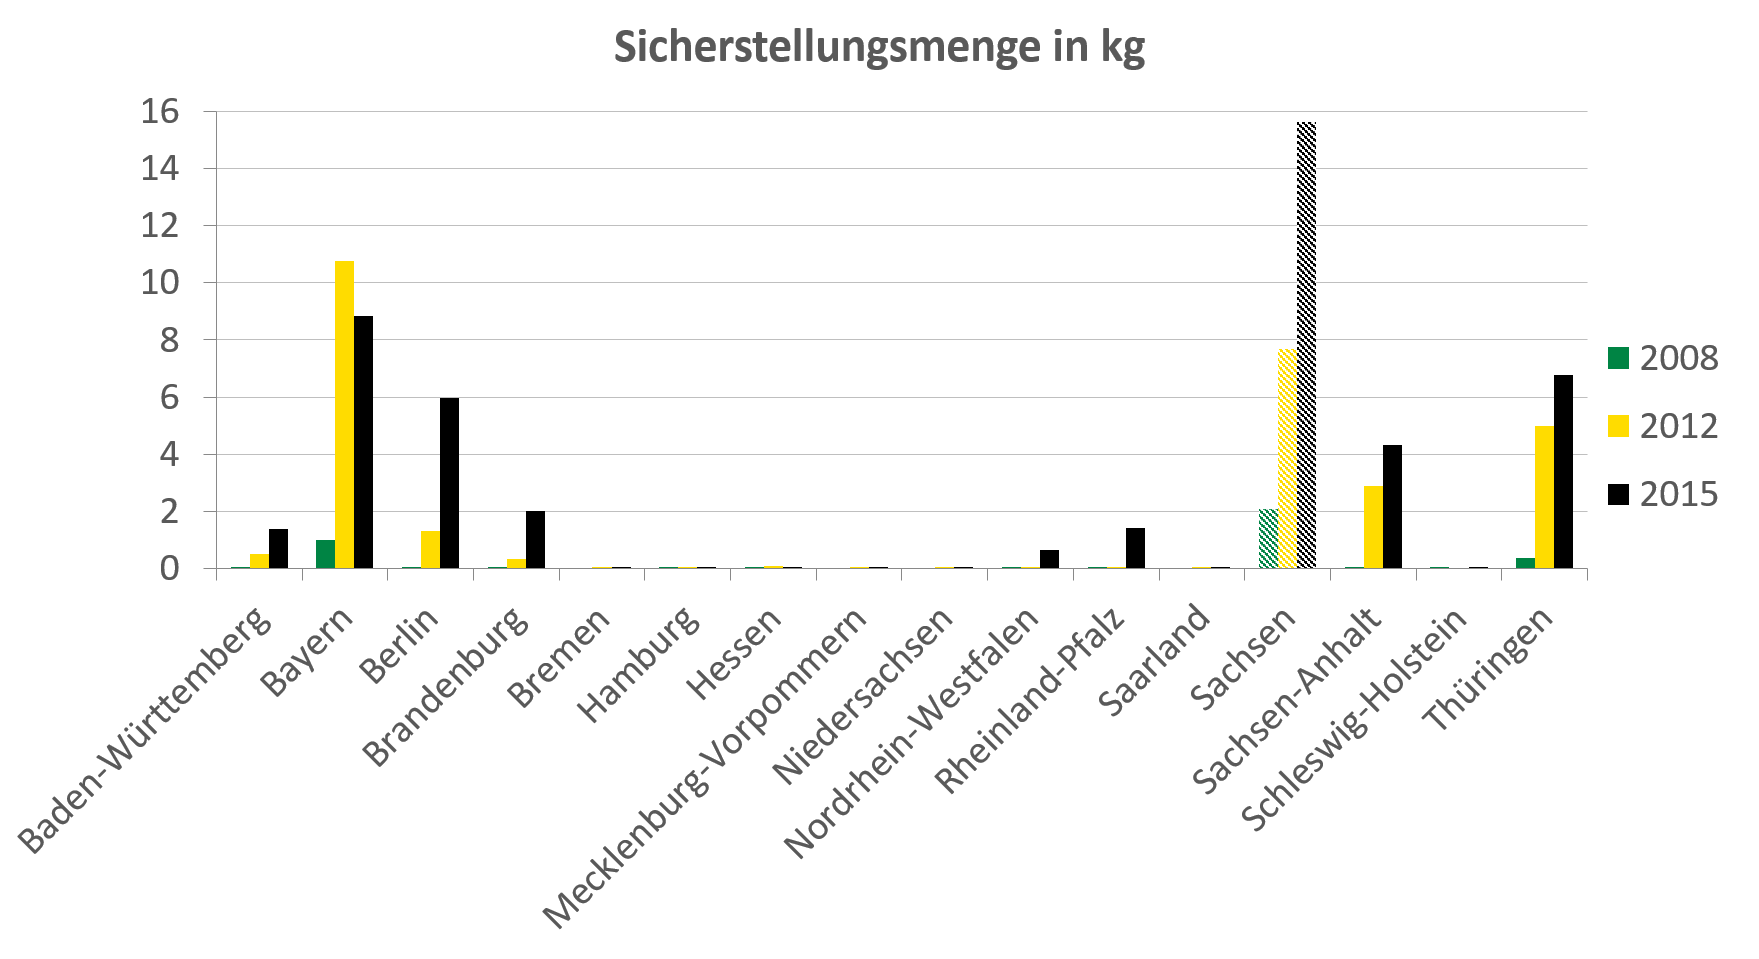 Im Deutschlandvergleich wies Sachsen mit fast 16 kg im Jahr 2015 die höchste sichergestellte Menge an Crystal Meth auf. Von 2012 auf 2015 hat diese Menge sich fast verdoppelt. Auch in Bayern hat sich die Menge von 2008 auf 2012 fast verzehnfacht auf über 10 kg. Die Anzahl der Sicherstellungen zeigt eine sehr ähnliche Verteilung wie die Sicherstellungsmenge.